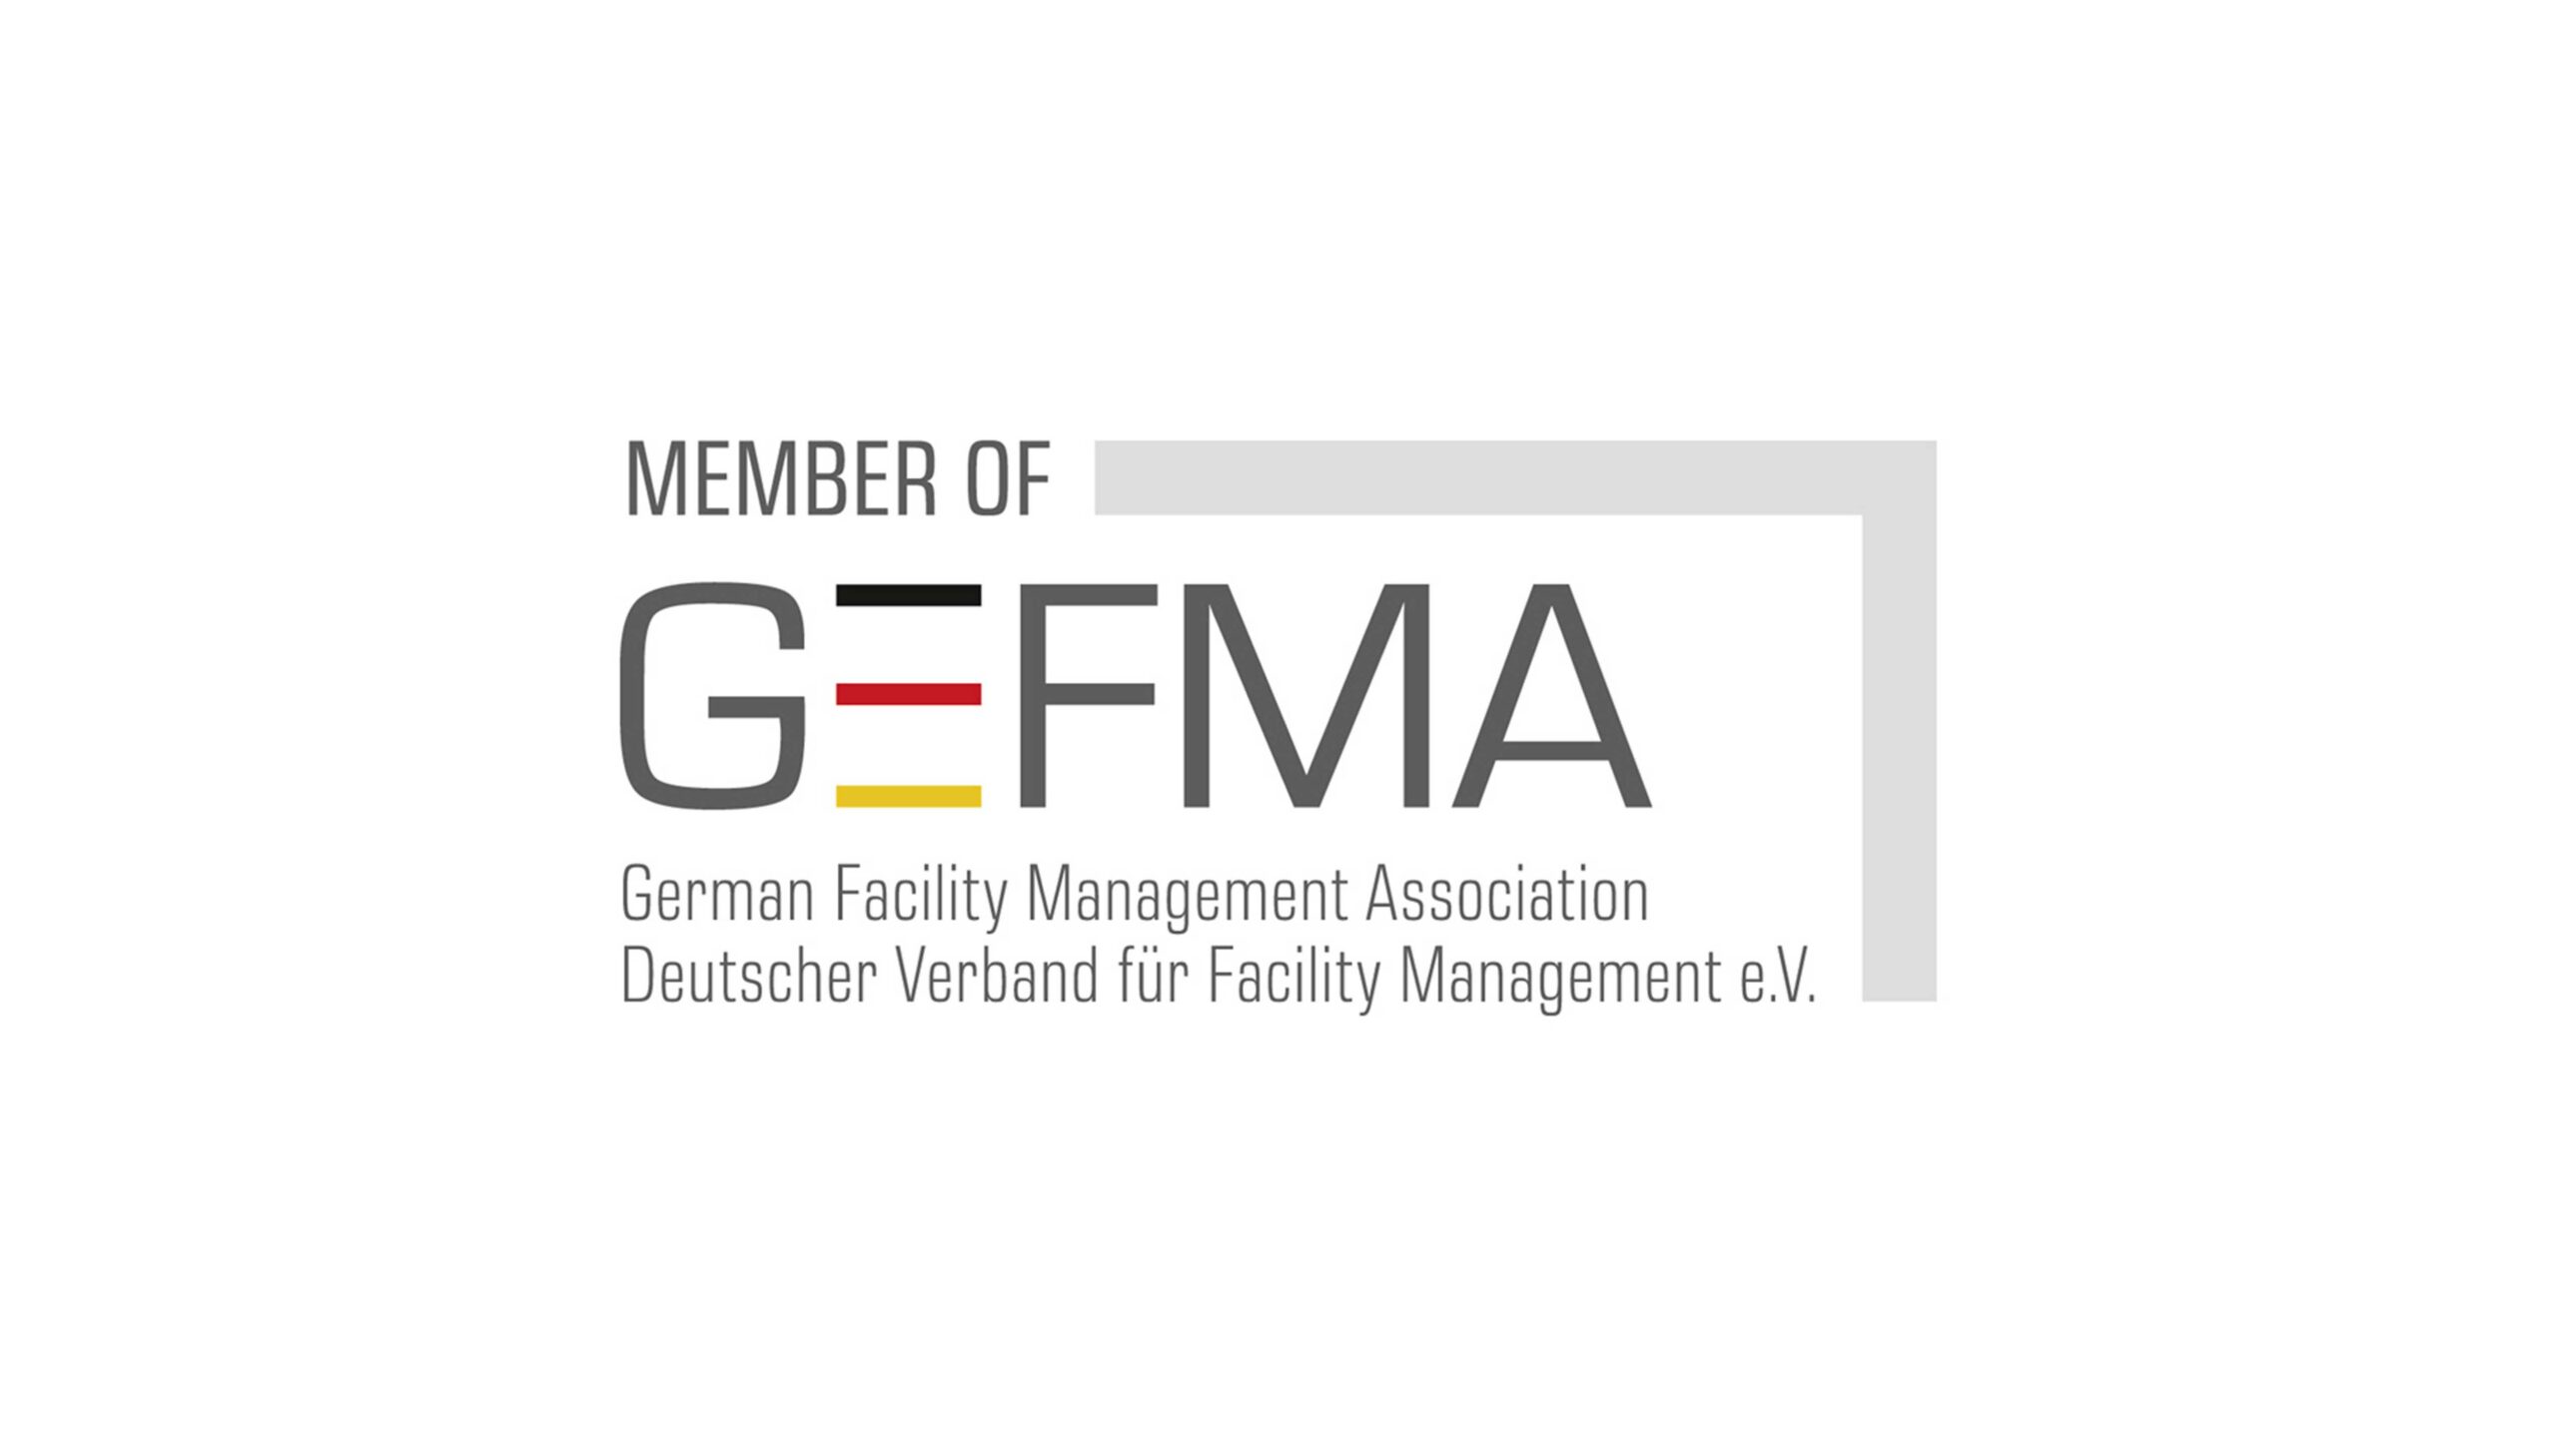 Wir freuen uns mitteilen zu dürfen, dass Excellence4Digital GmbH jetzt auch Teil einer starken Gemeinschaft ist, die das Facility Management bewegt, der GEFMA – Deutscher Verband für Facility Management. Excellence4Digital GmbH